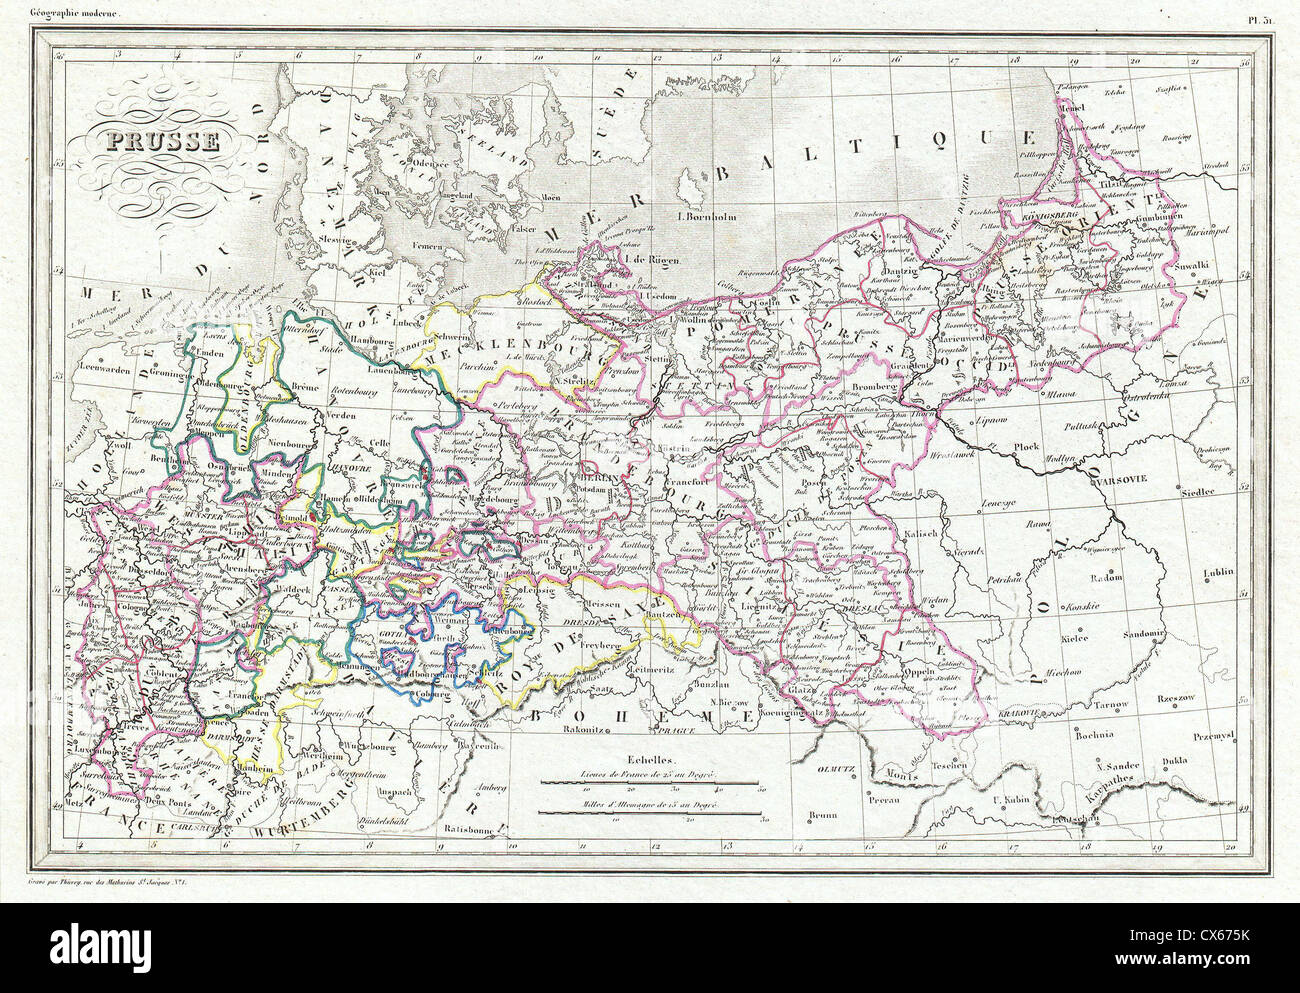 1843 Malte-Brun Mapa de Prusia, Alemania Foto de stock